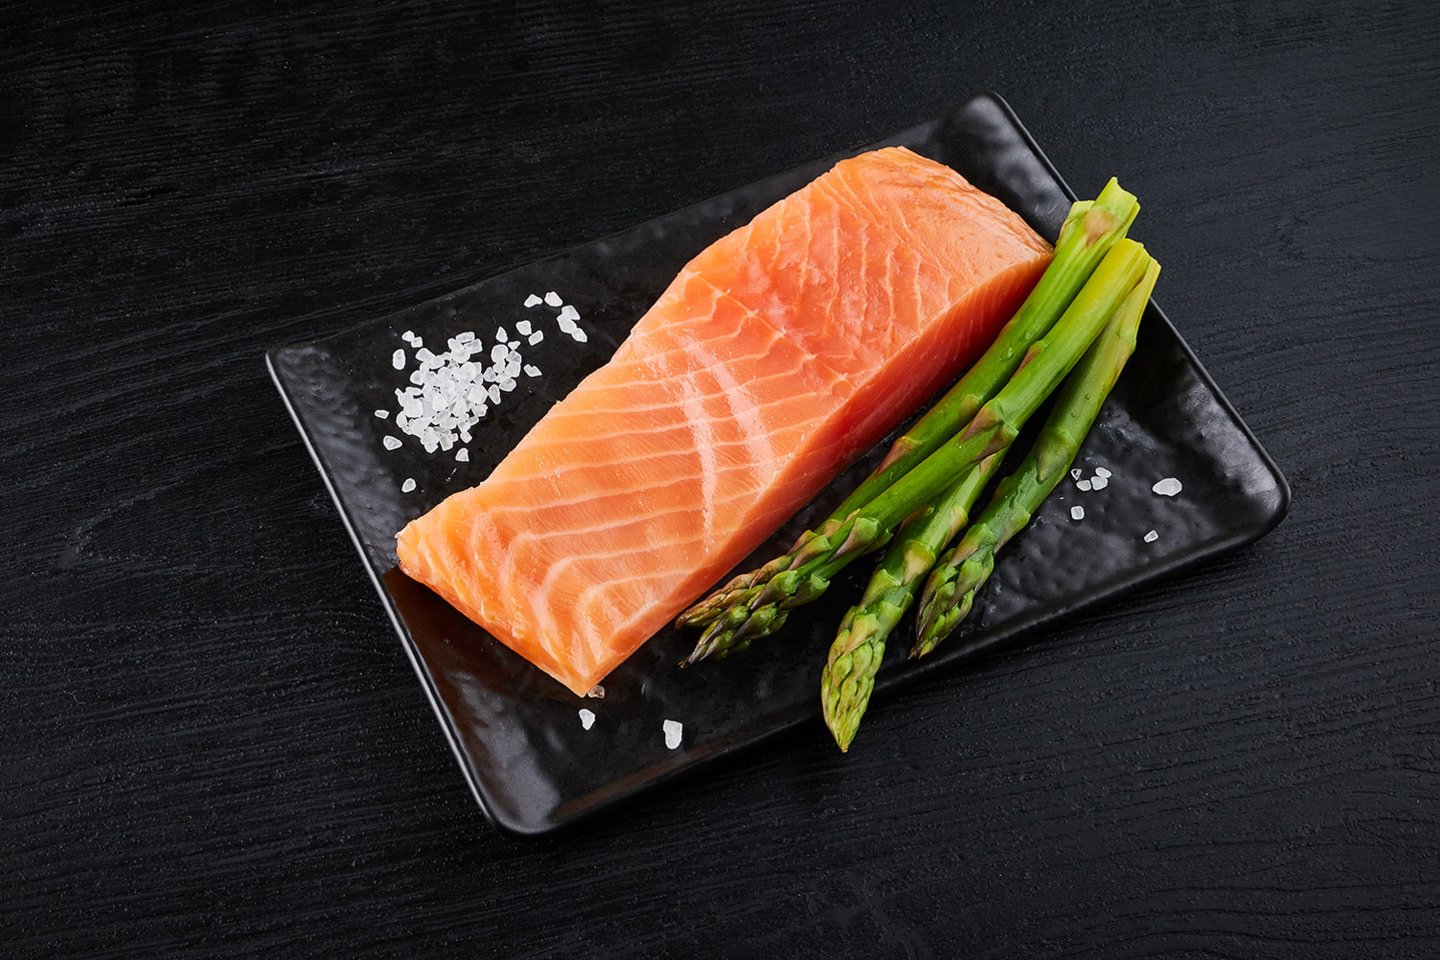 Šviežia žuvis – vienas vertingiausių organizmui maisto produktų, turinčių daugybę naudingų vitaminų bei elementų.